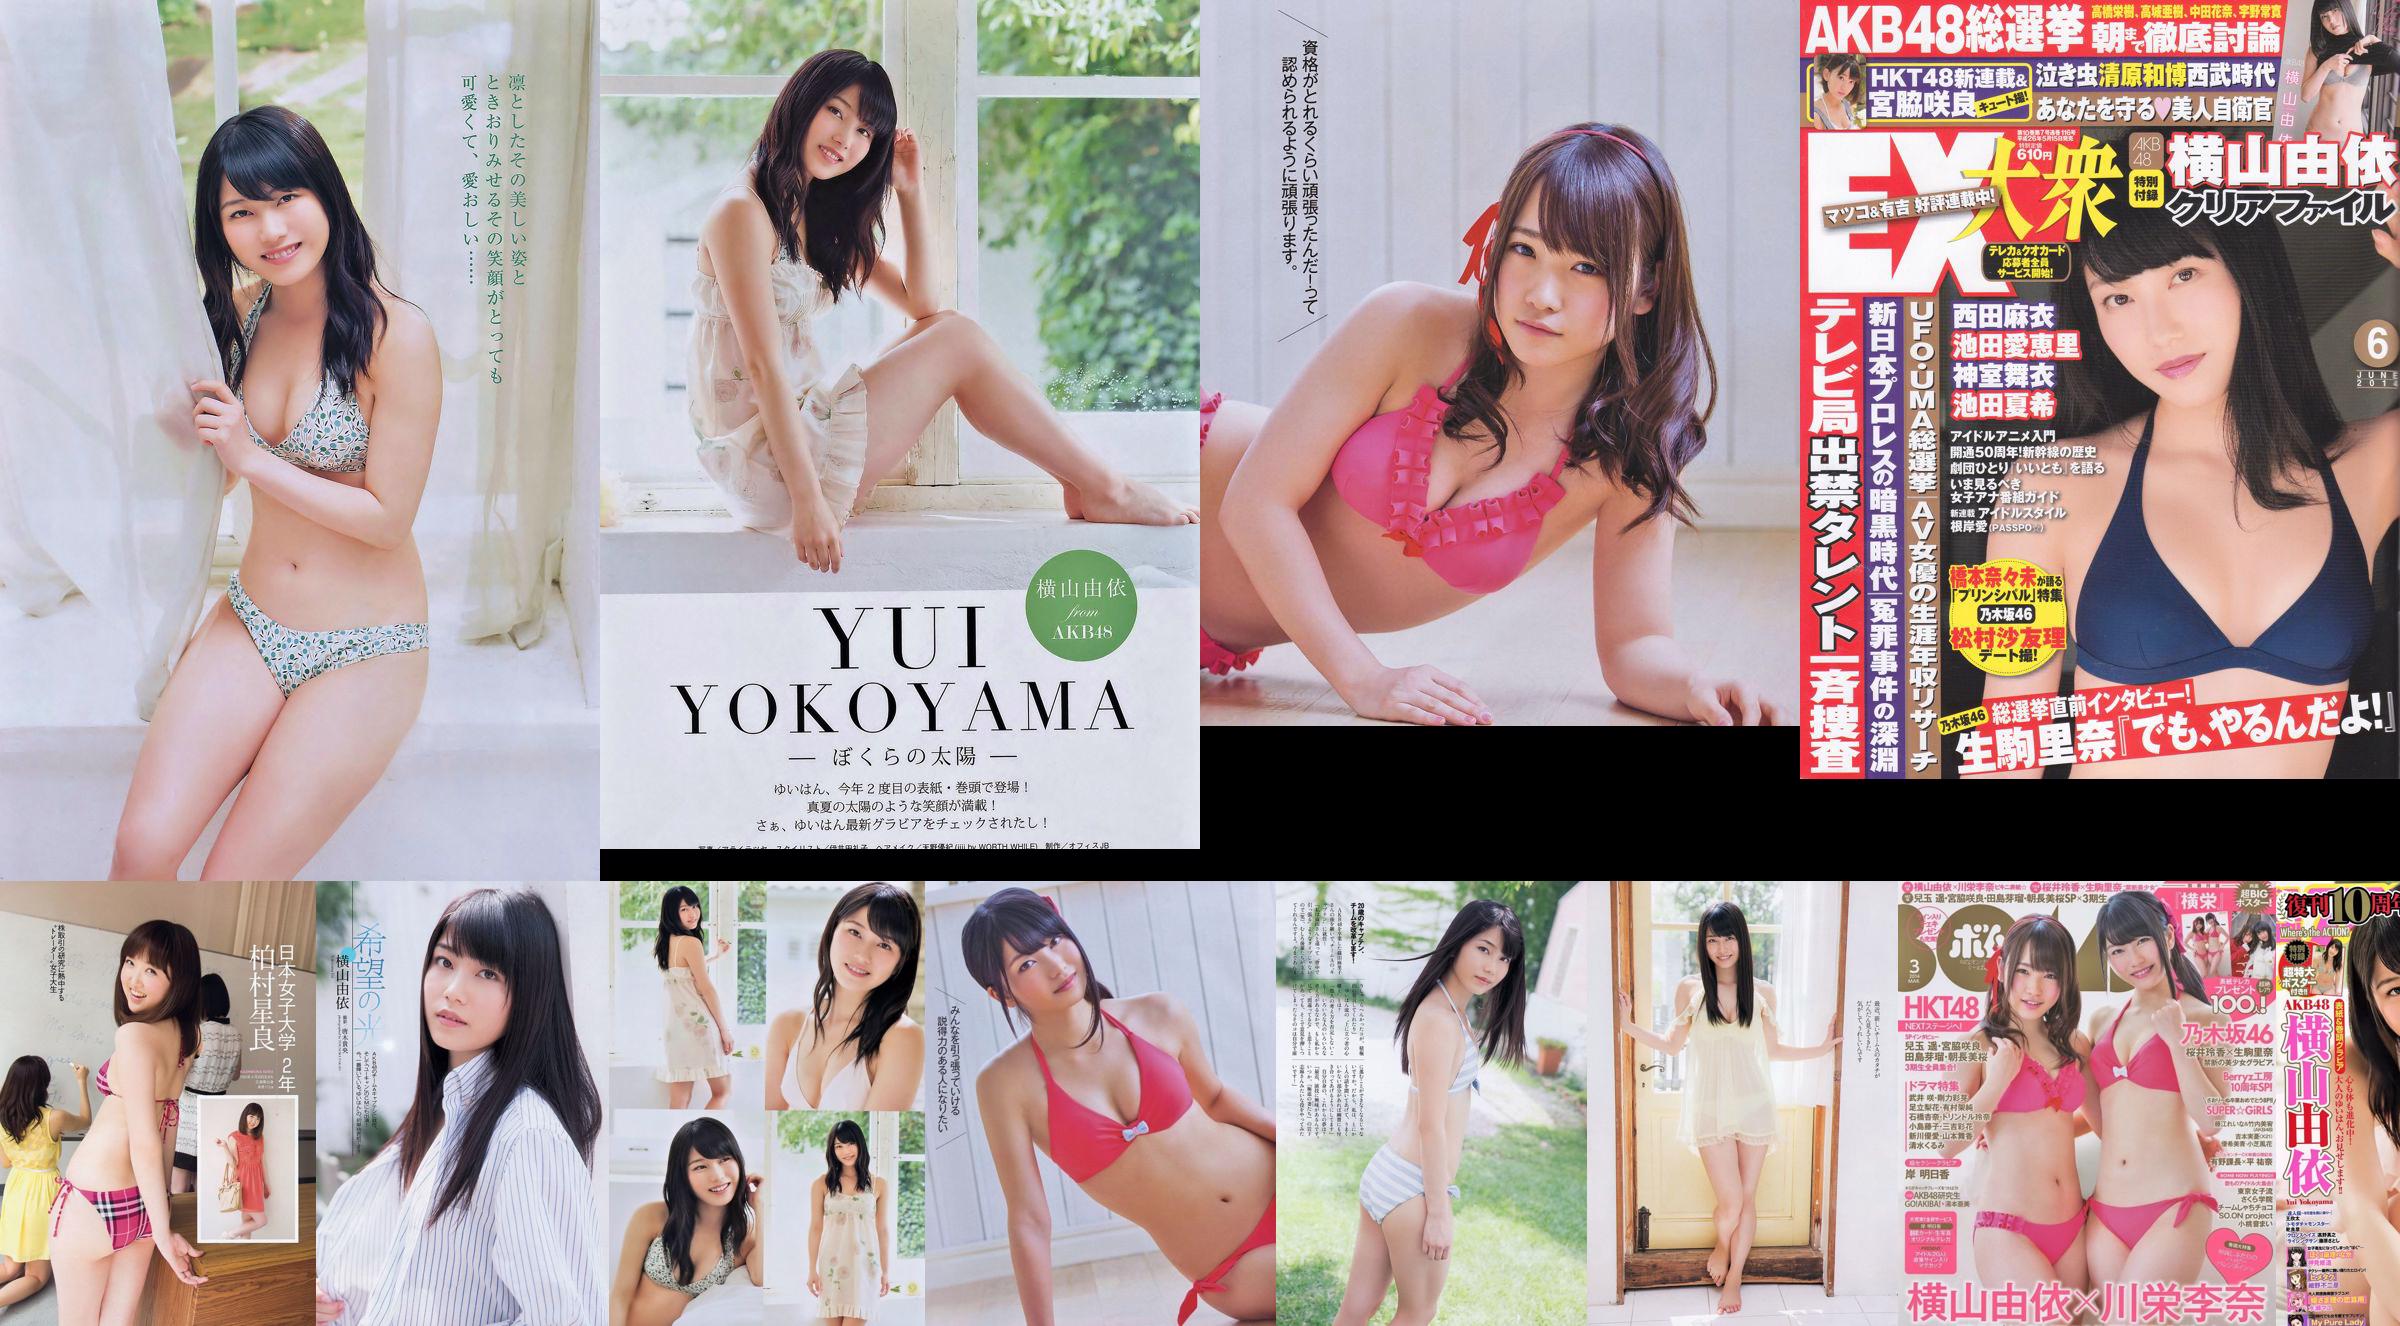 Yui Yokoyama Nozomi Sasaki Rina Koike Asuka Kuramochi Miwako Kakei Risa Yoshiki Ruri Shinato [Weekly Playboy] 2013 No.38 Photograph No.a69aba Page 7